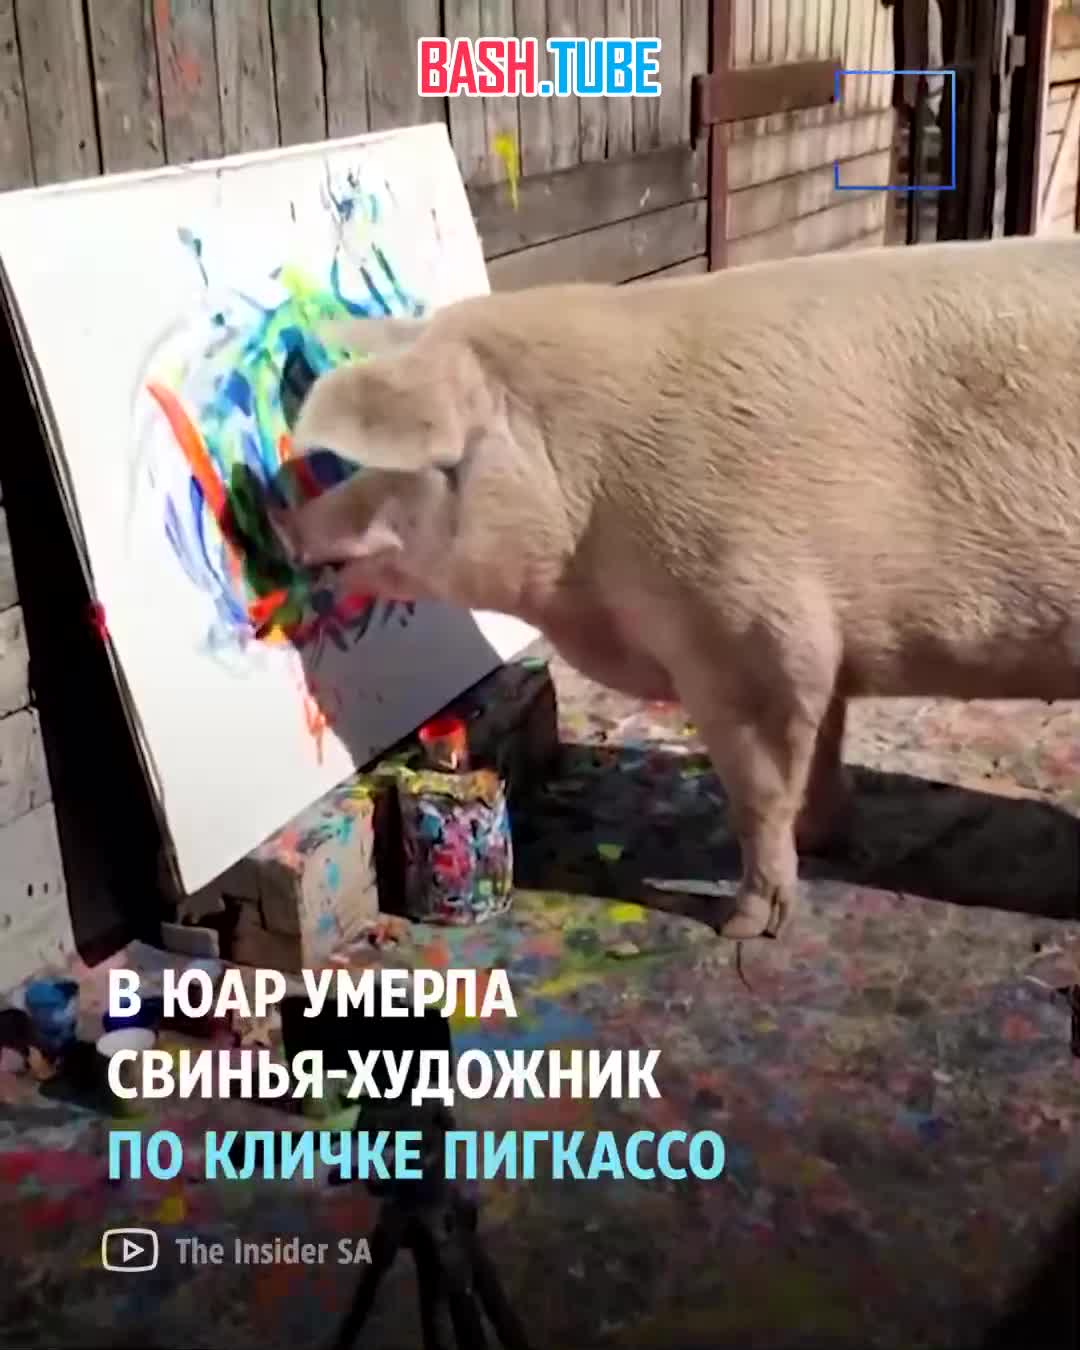  Свинка Пигкассо была известна во всём мире тем, что умела писать картины